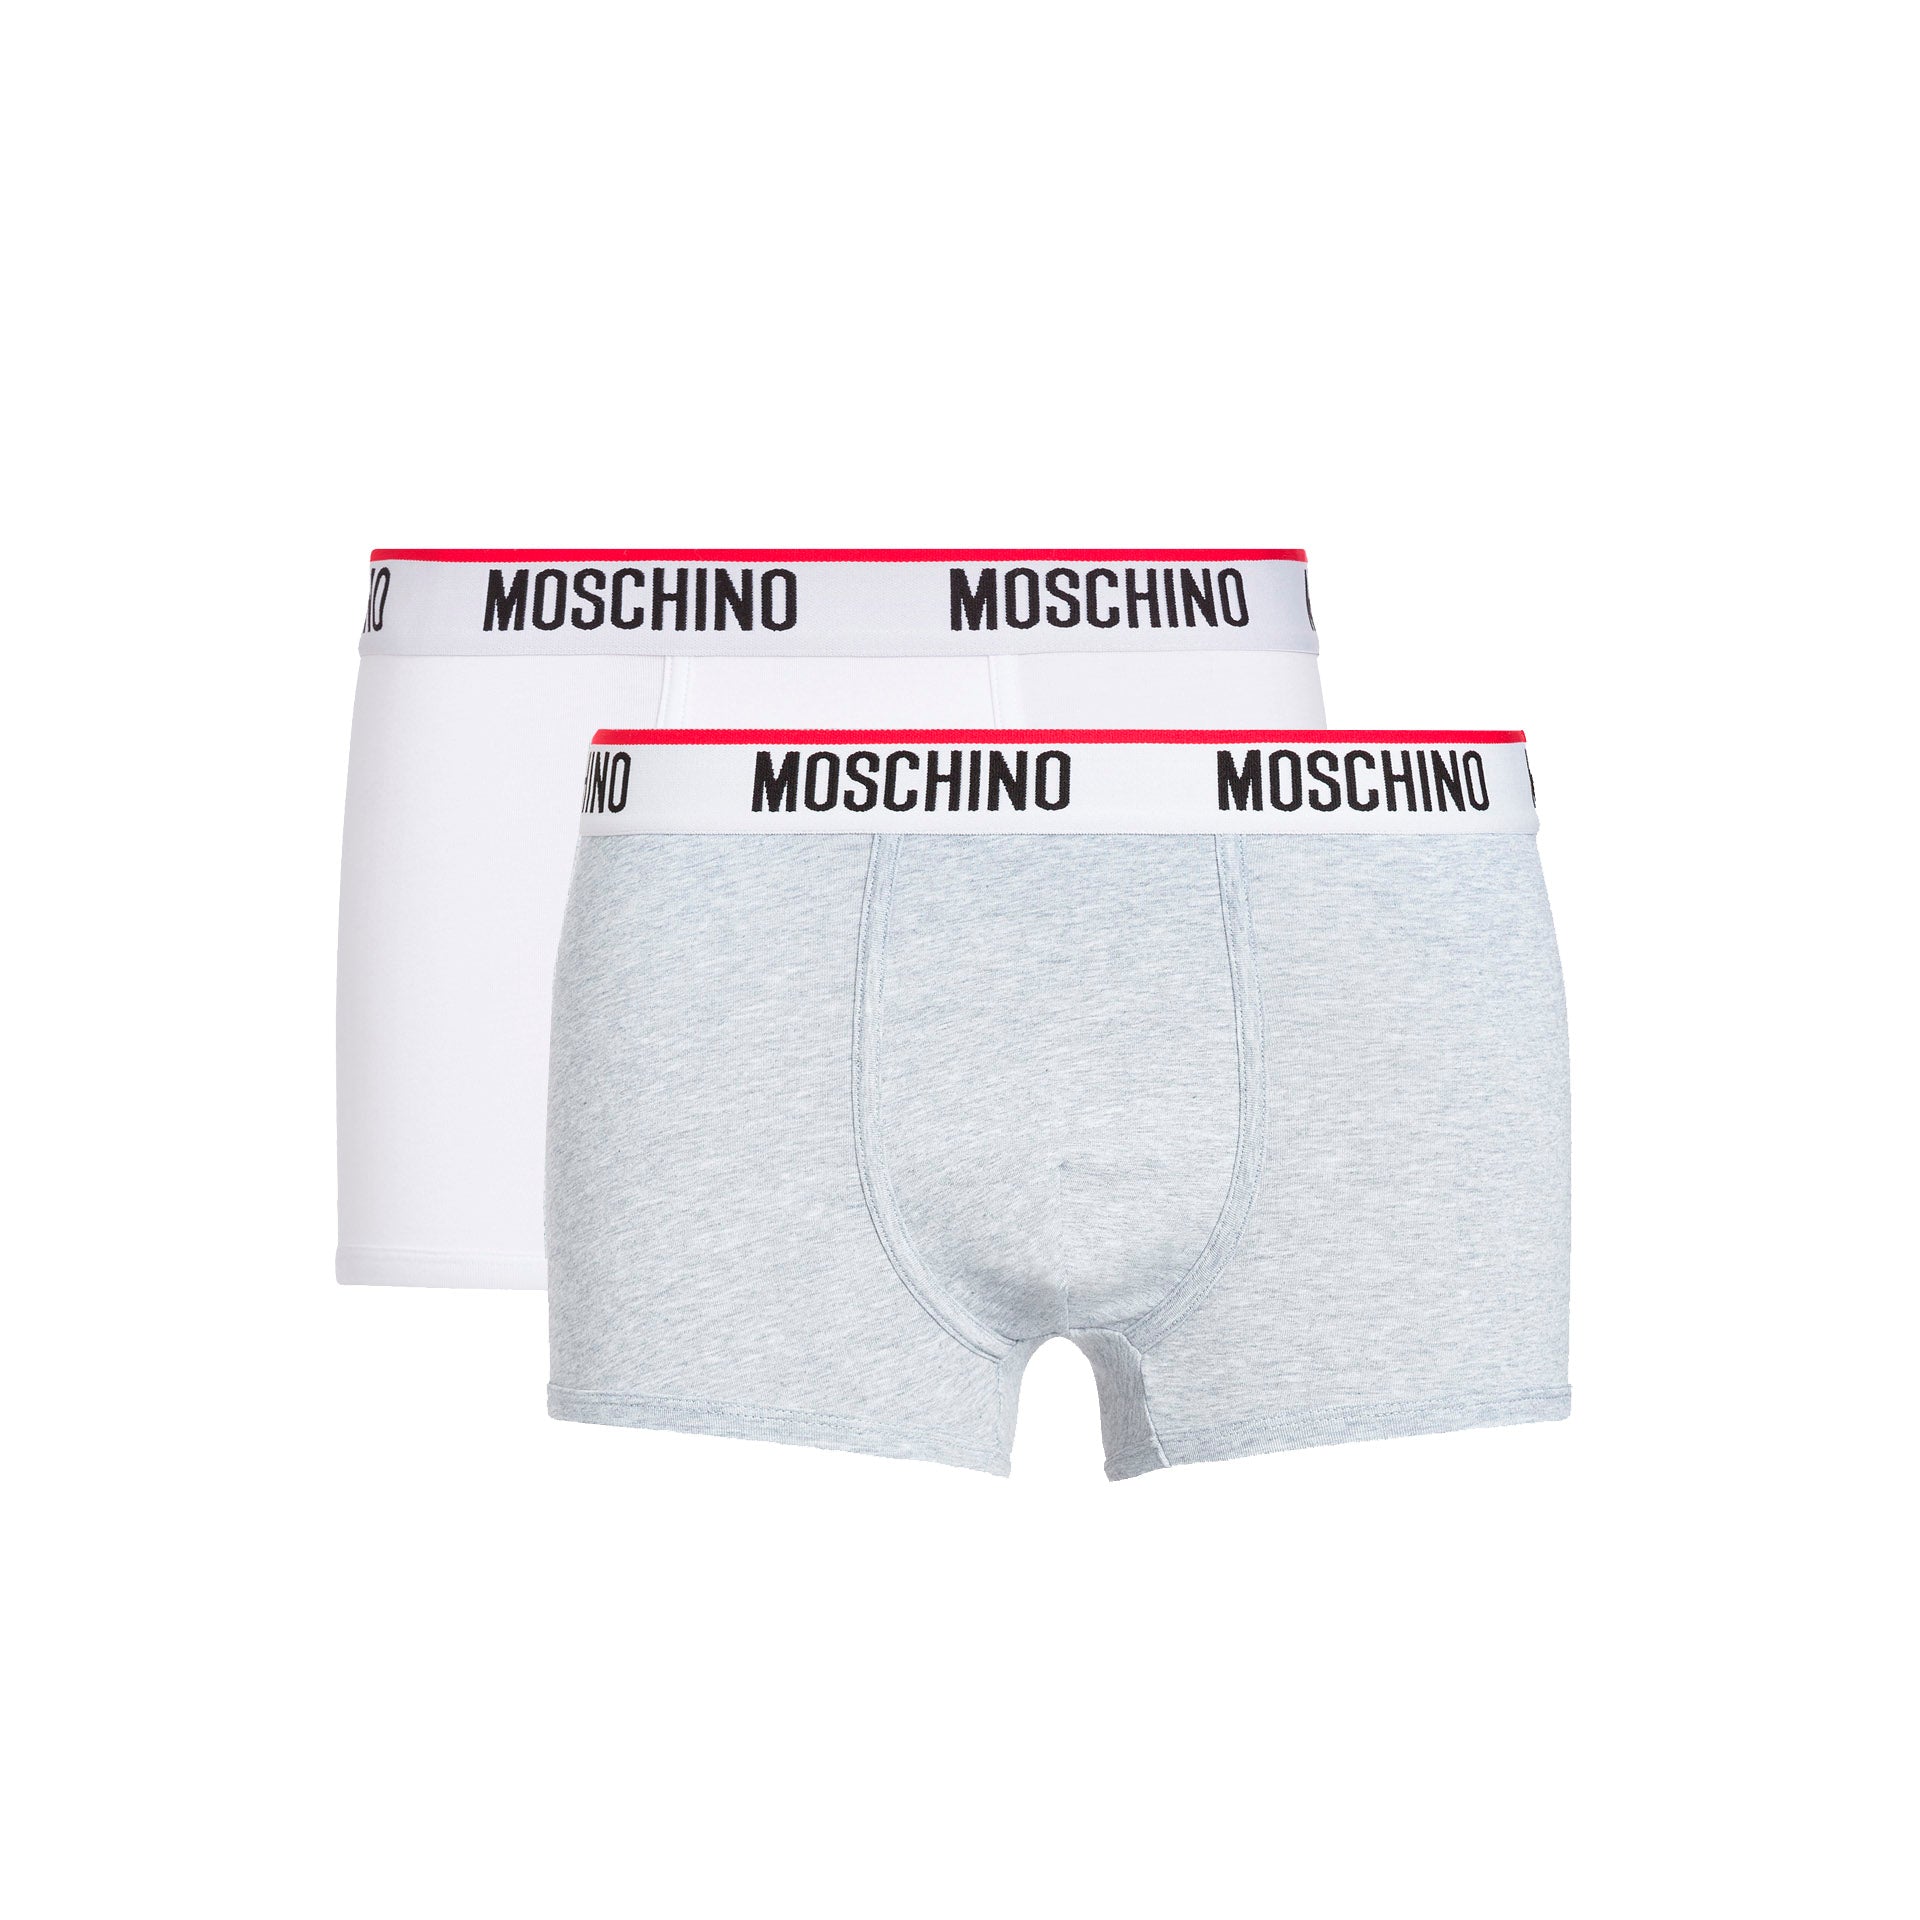 Moschino Boxer Algodão Branco/Cinza - Pack 2